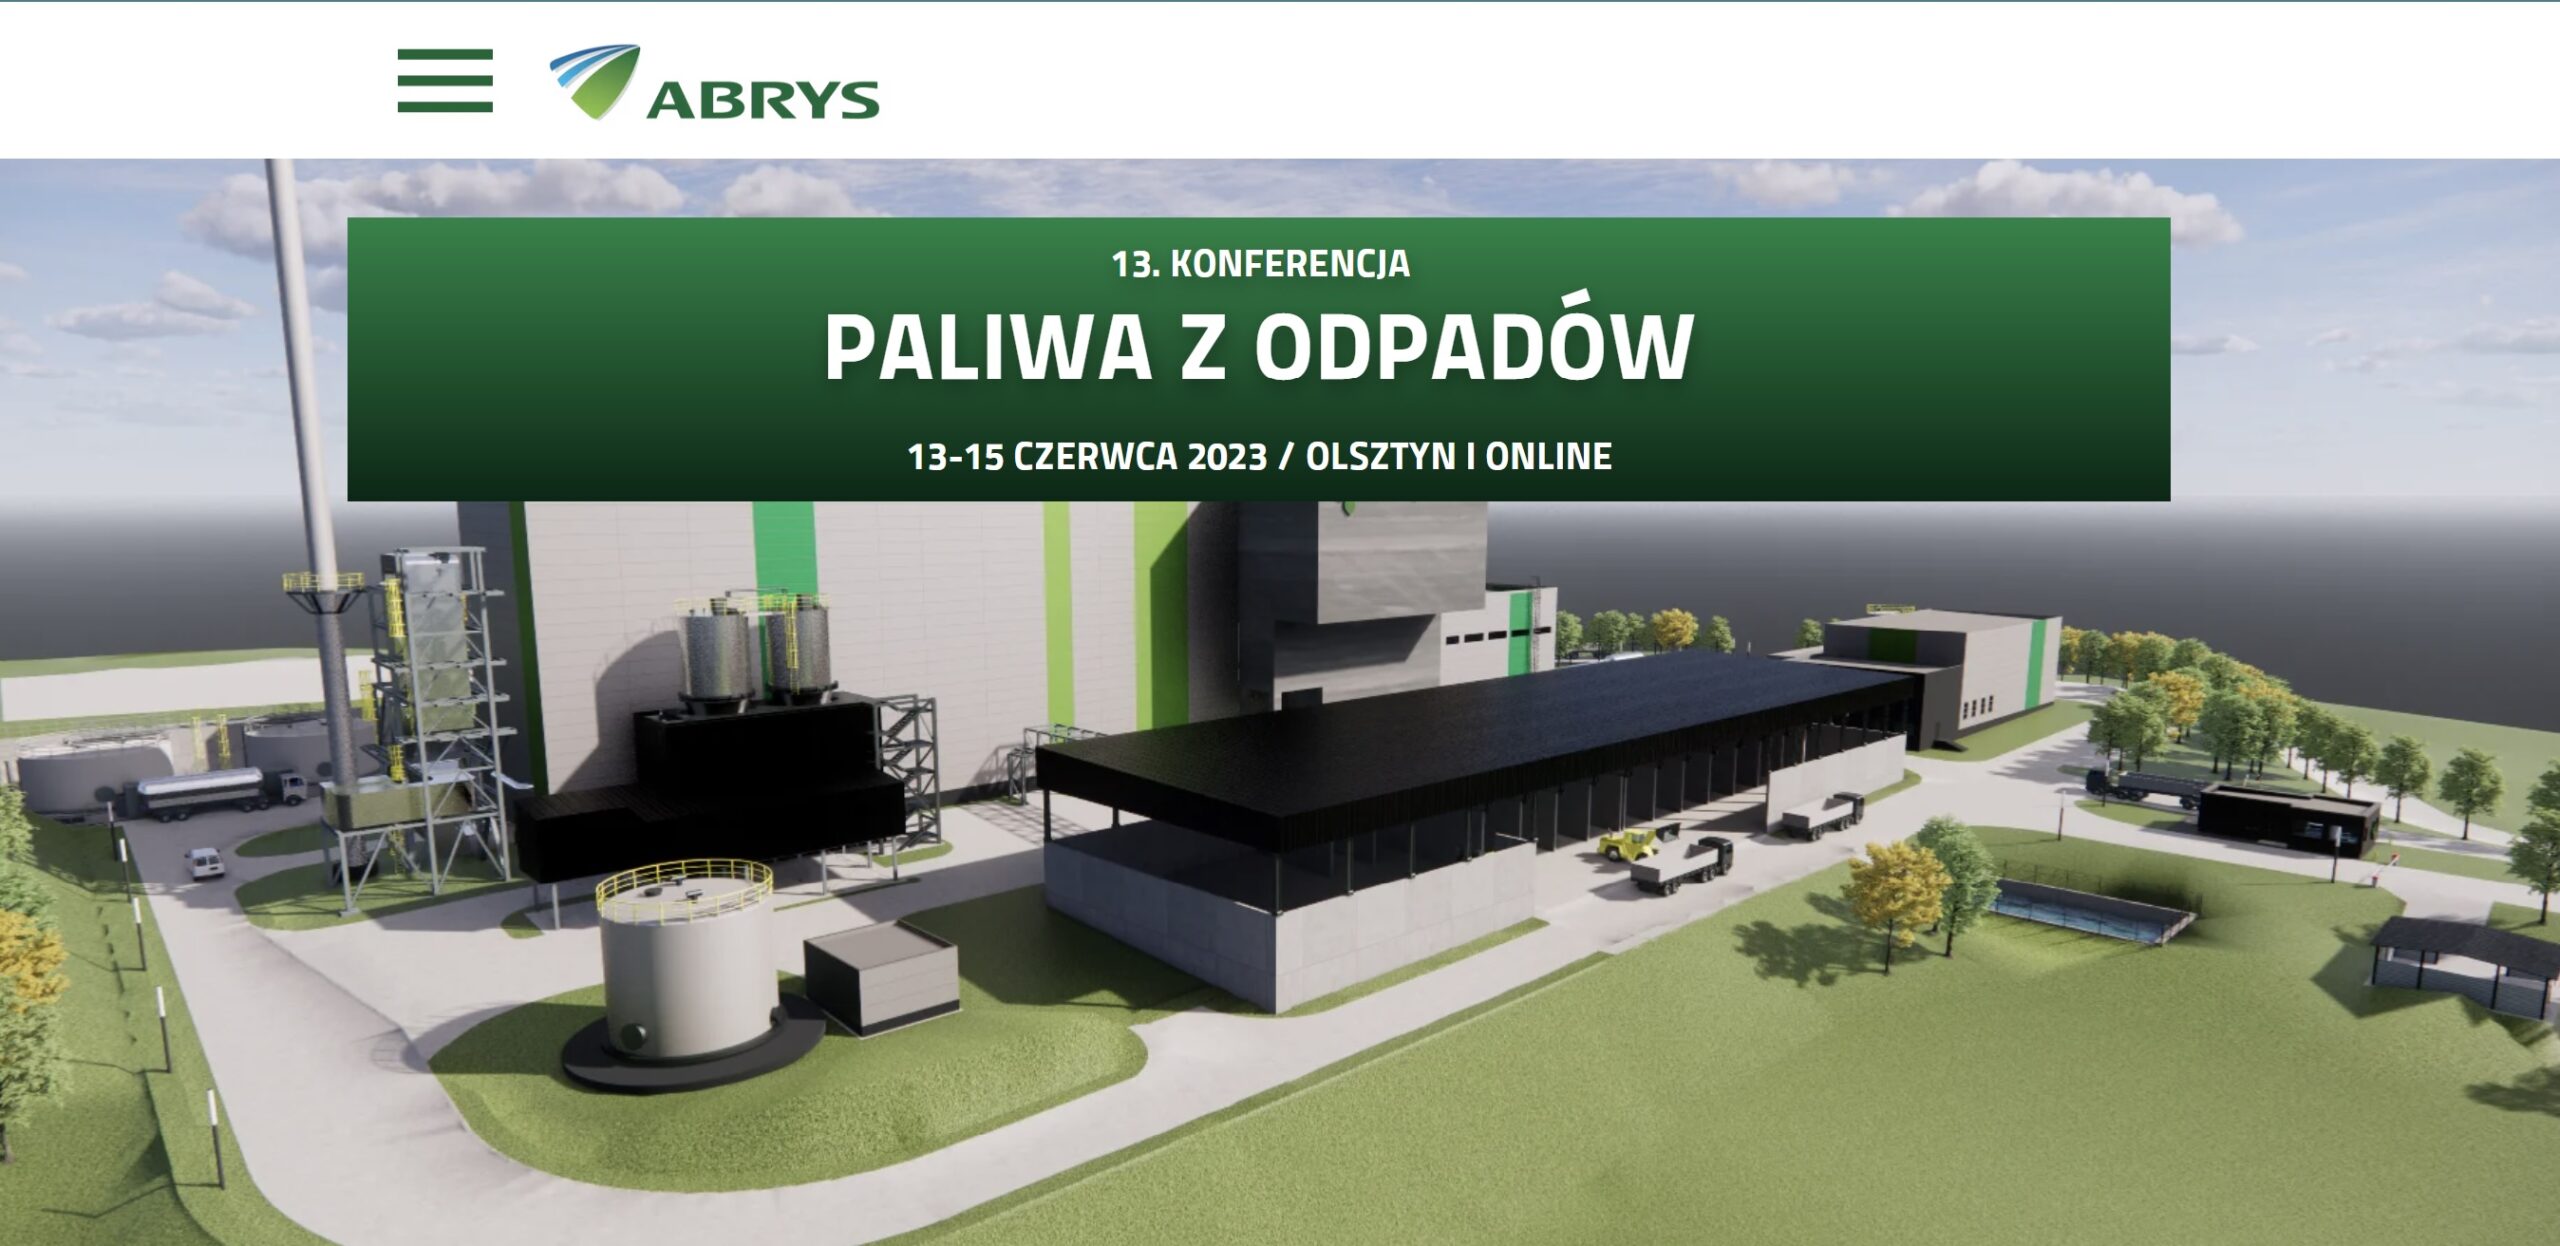 13. Konferencja Paliwa z odpadów w Olsztynie, 13-15 czerwca 2023 r.